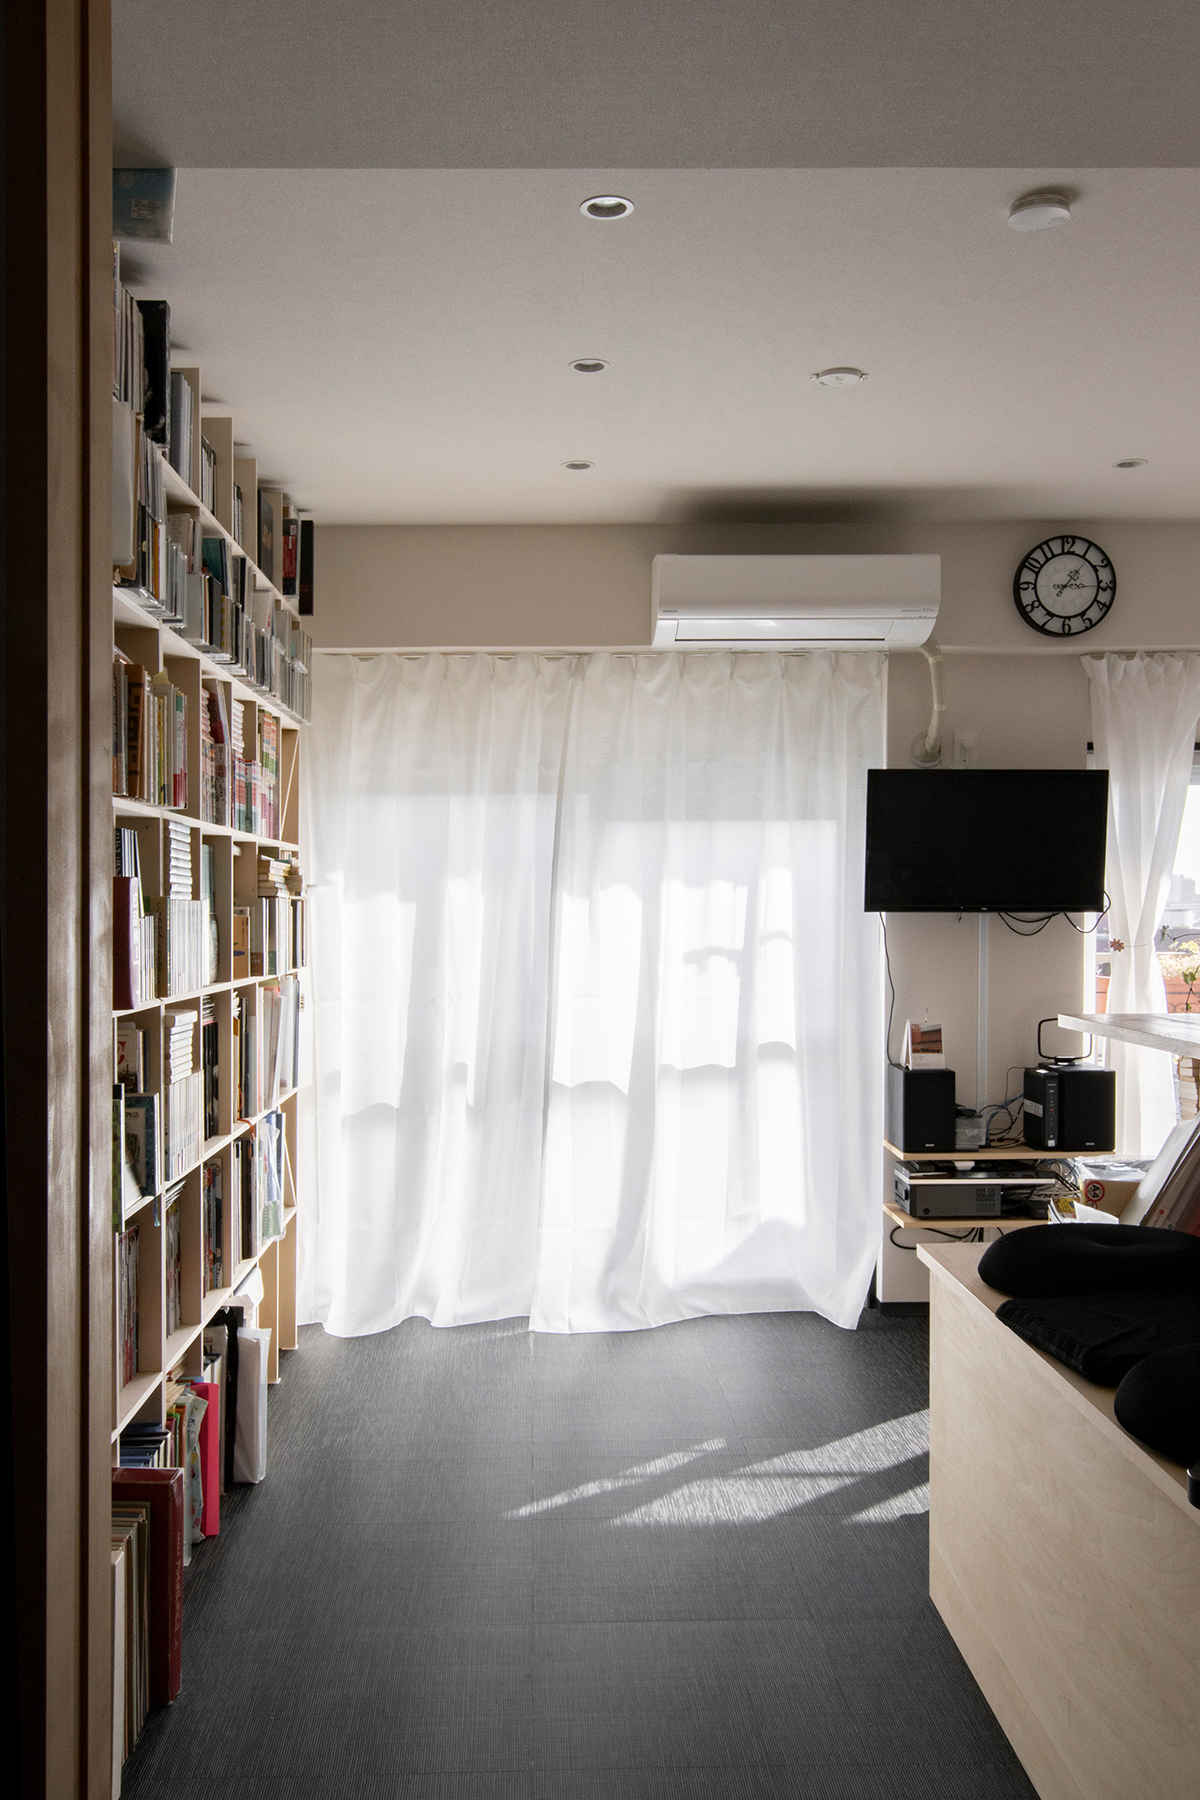 本棚に合わせて生活空間をリフォーム
天井まで壁一面の本棚